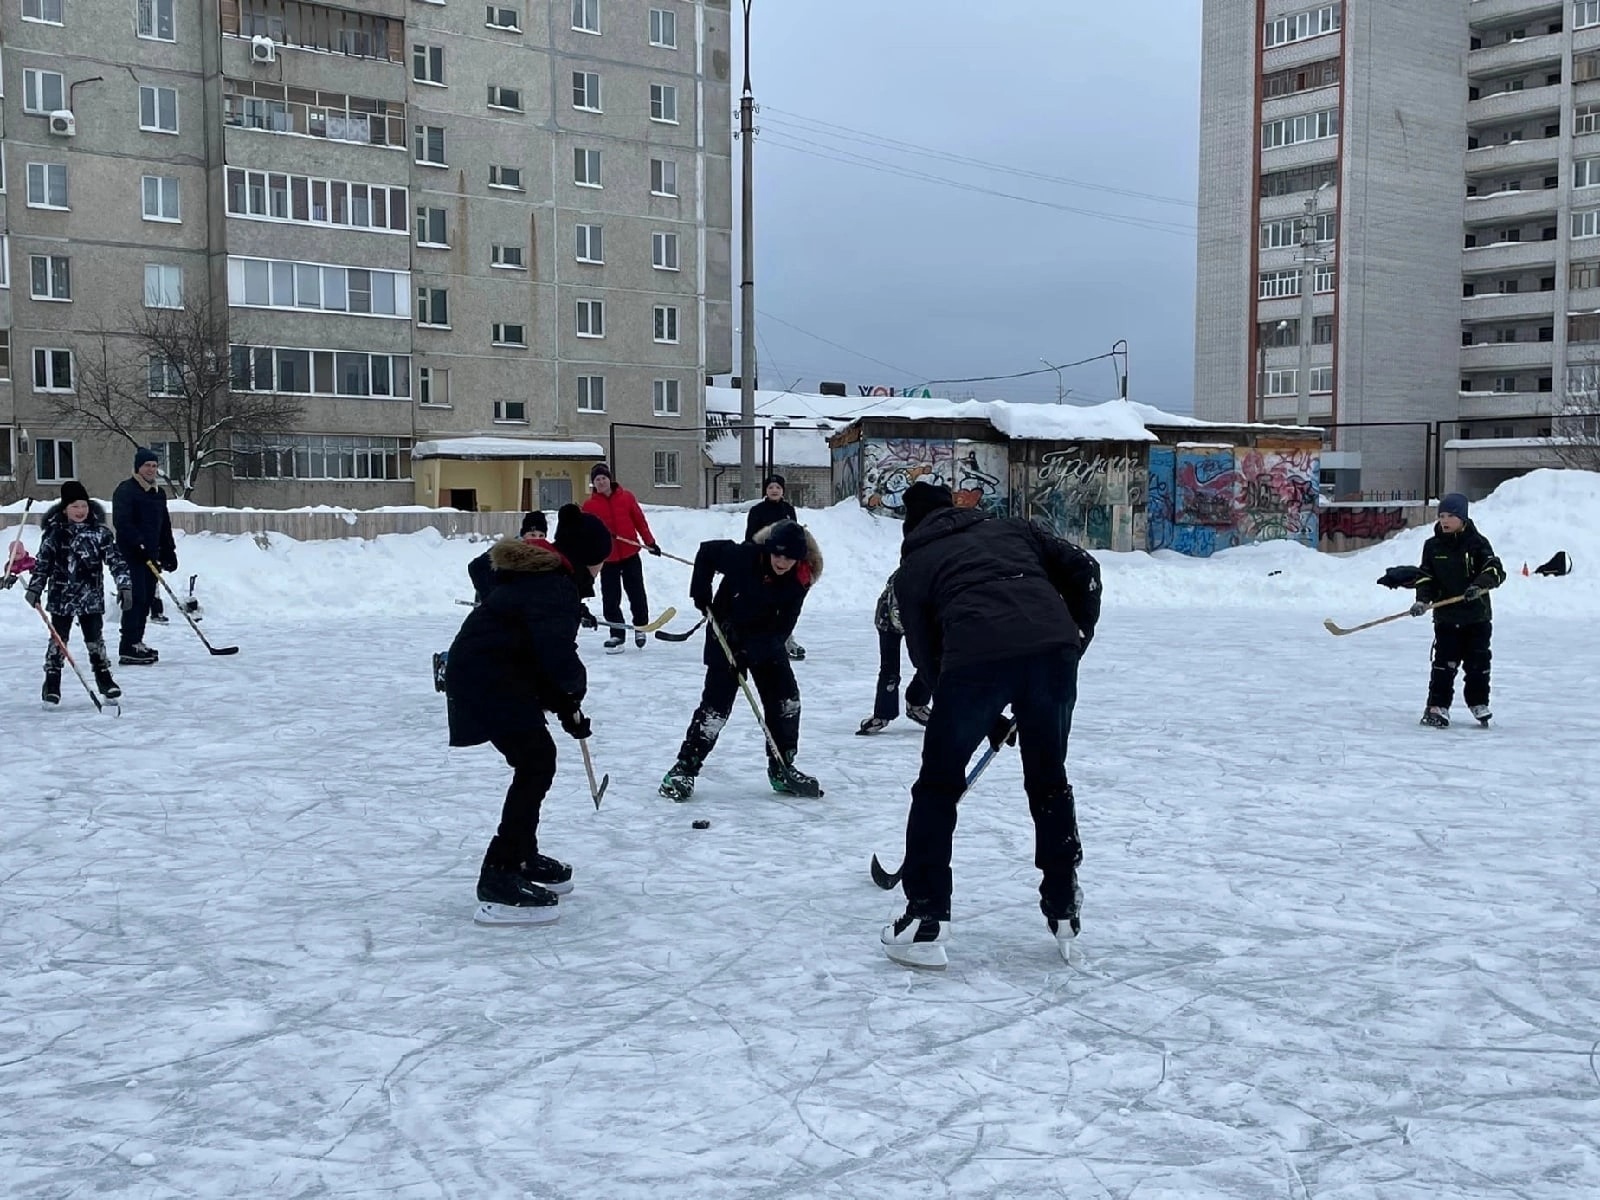 Товарищеский хоккейный матч пройдет на открытом катке в Йошкар-Оле 